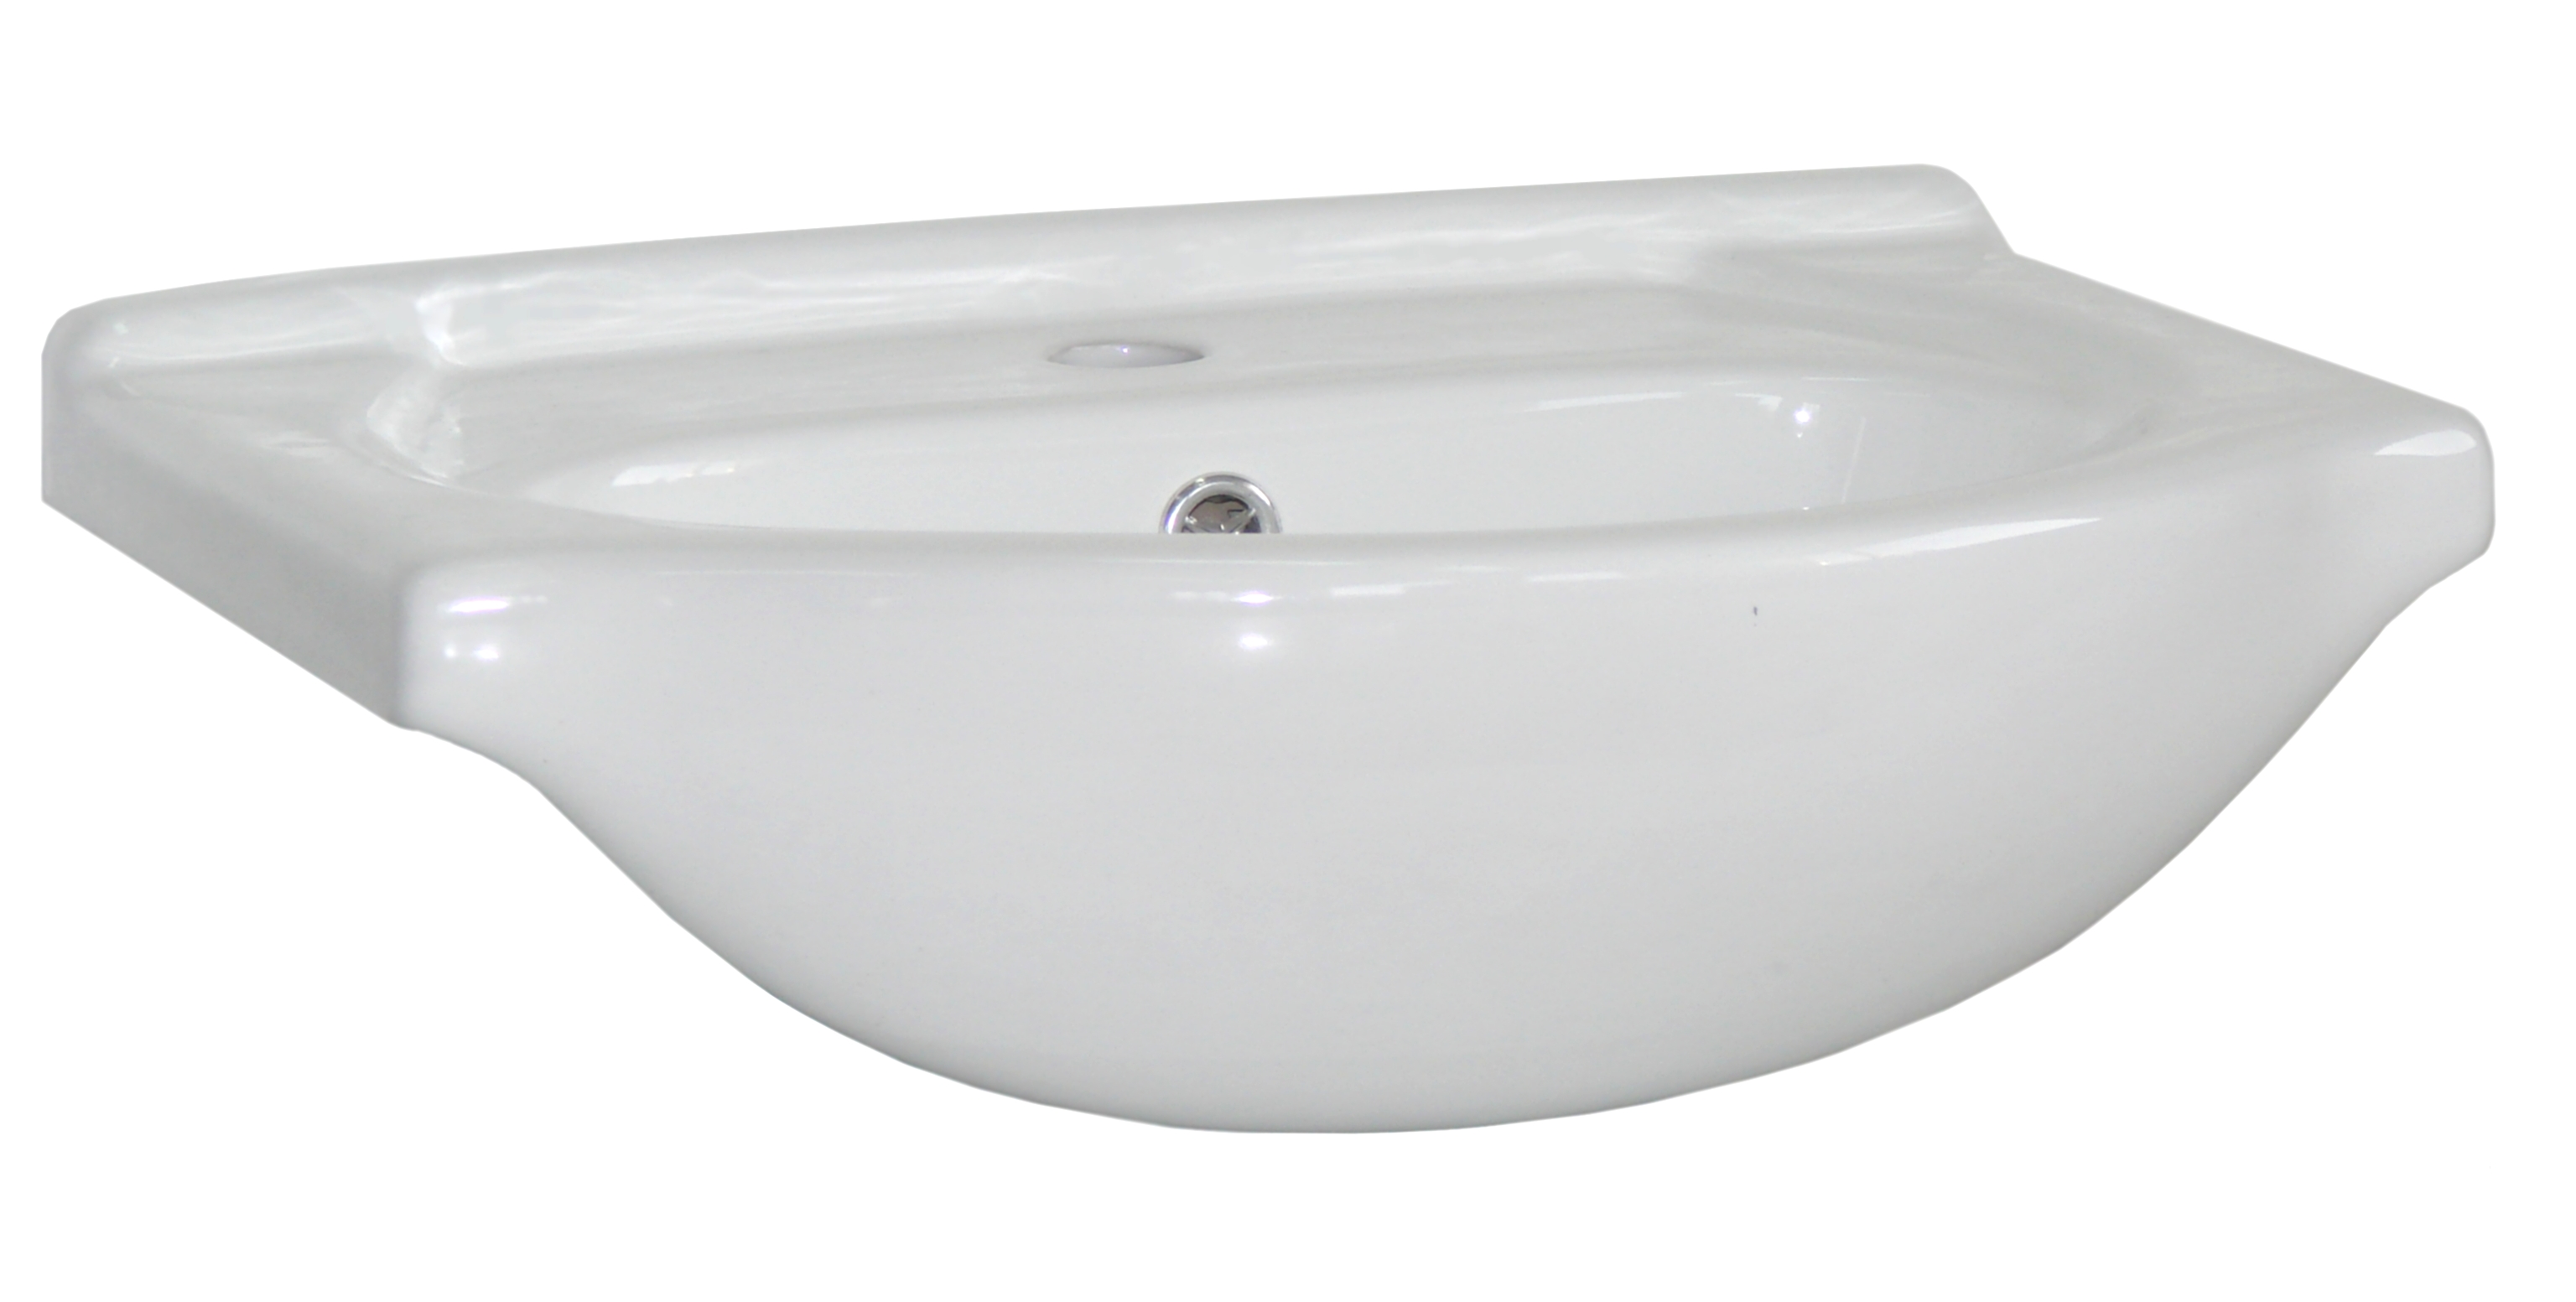 CFP 50 VINTAGE umywalka ceramiczna 50cm / washbasin 50cm/lavoar 50